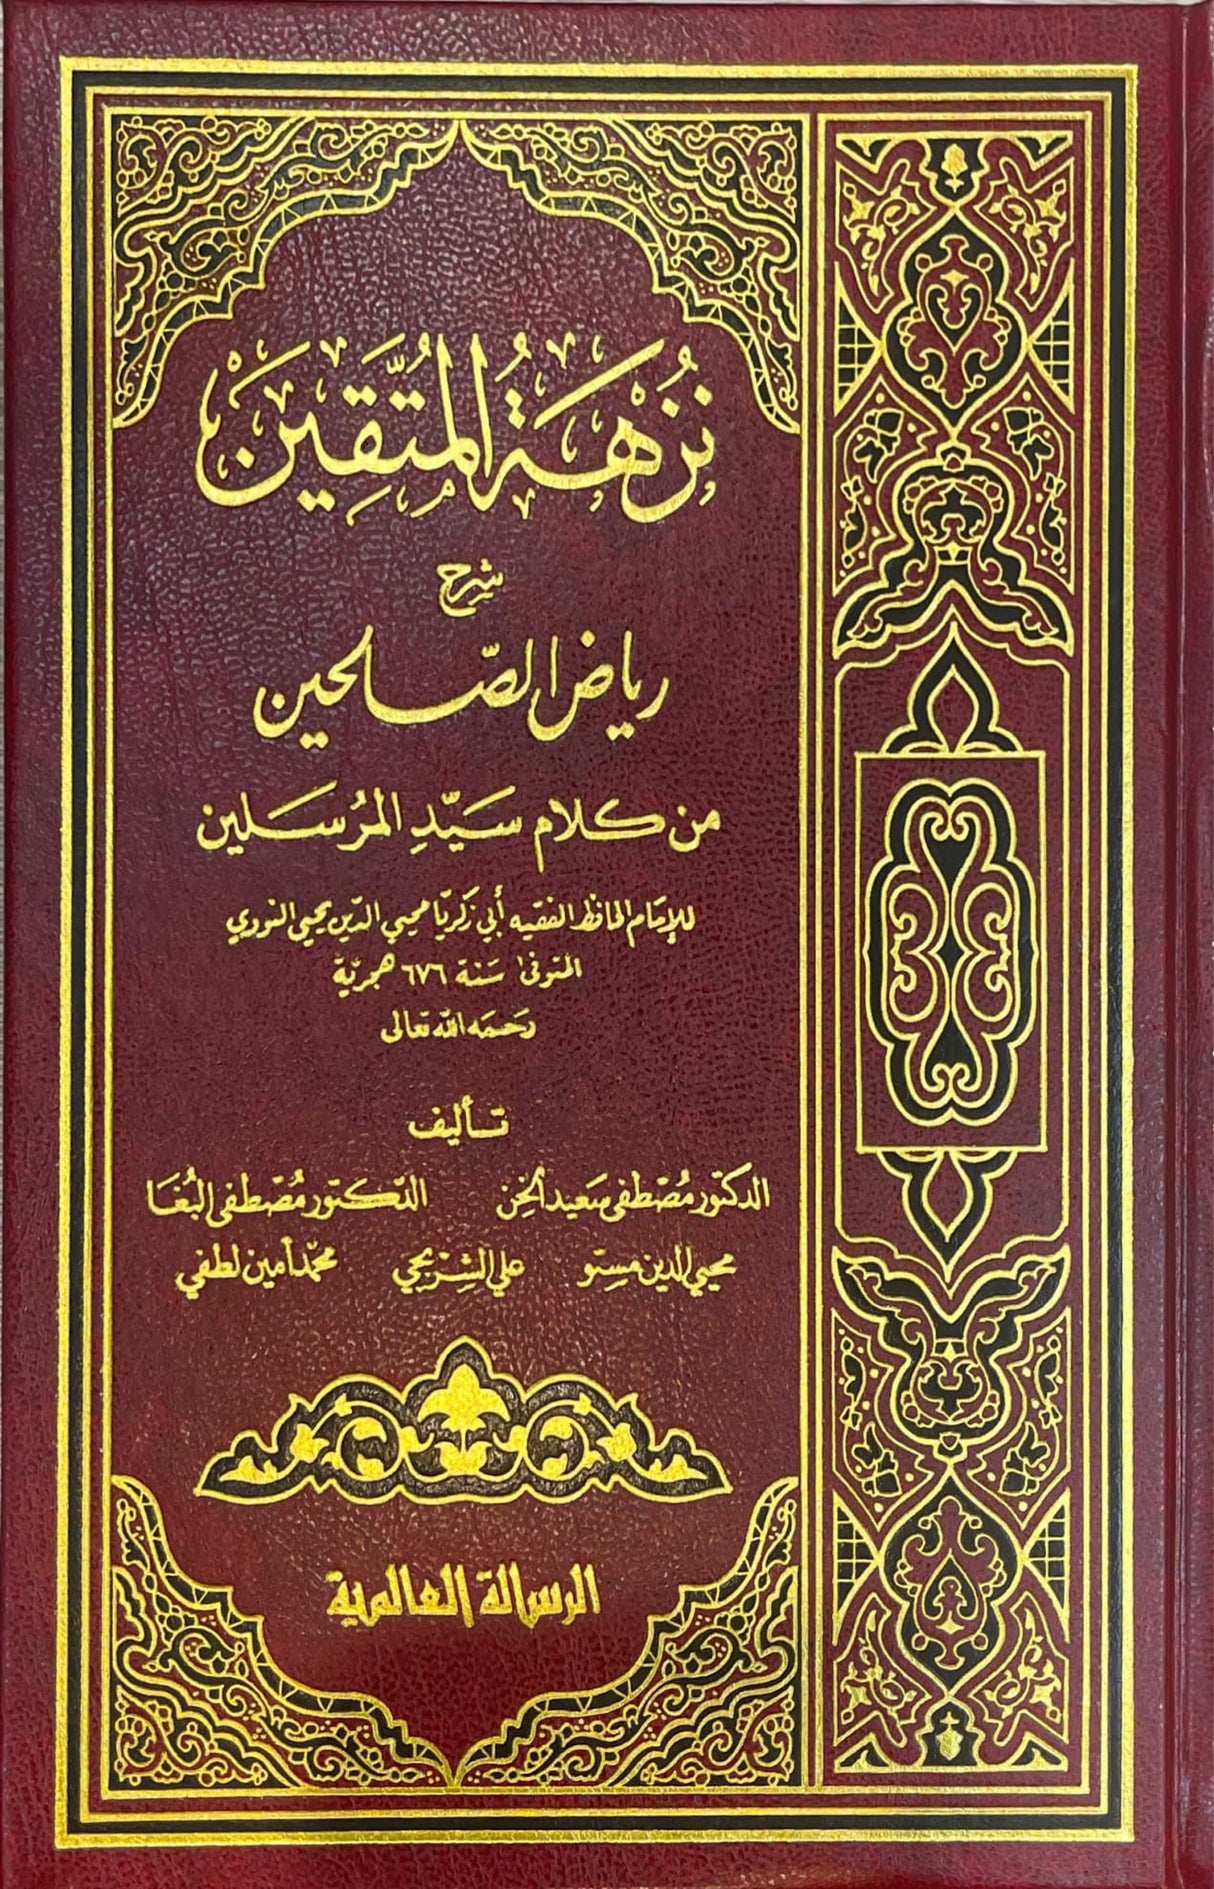 نزهة المتقين شرح رياض الصالحين    Nuzhatul Mutaqin (2 Volume Set)